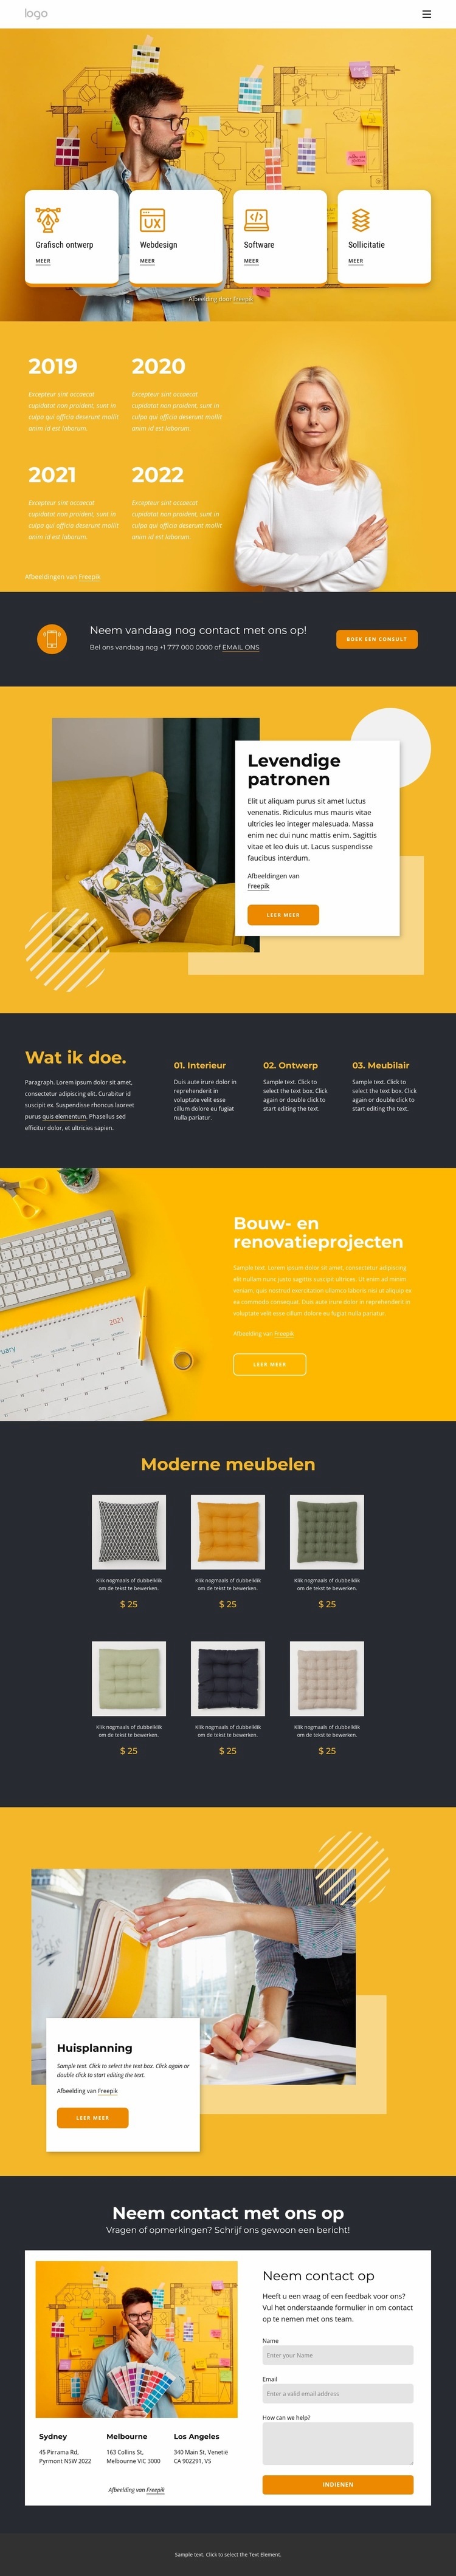 Modern ontwerpbureau HTML5-sjabloon